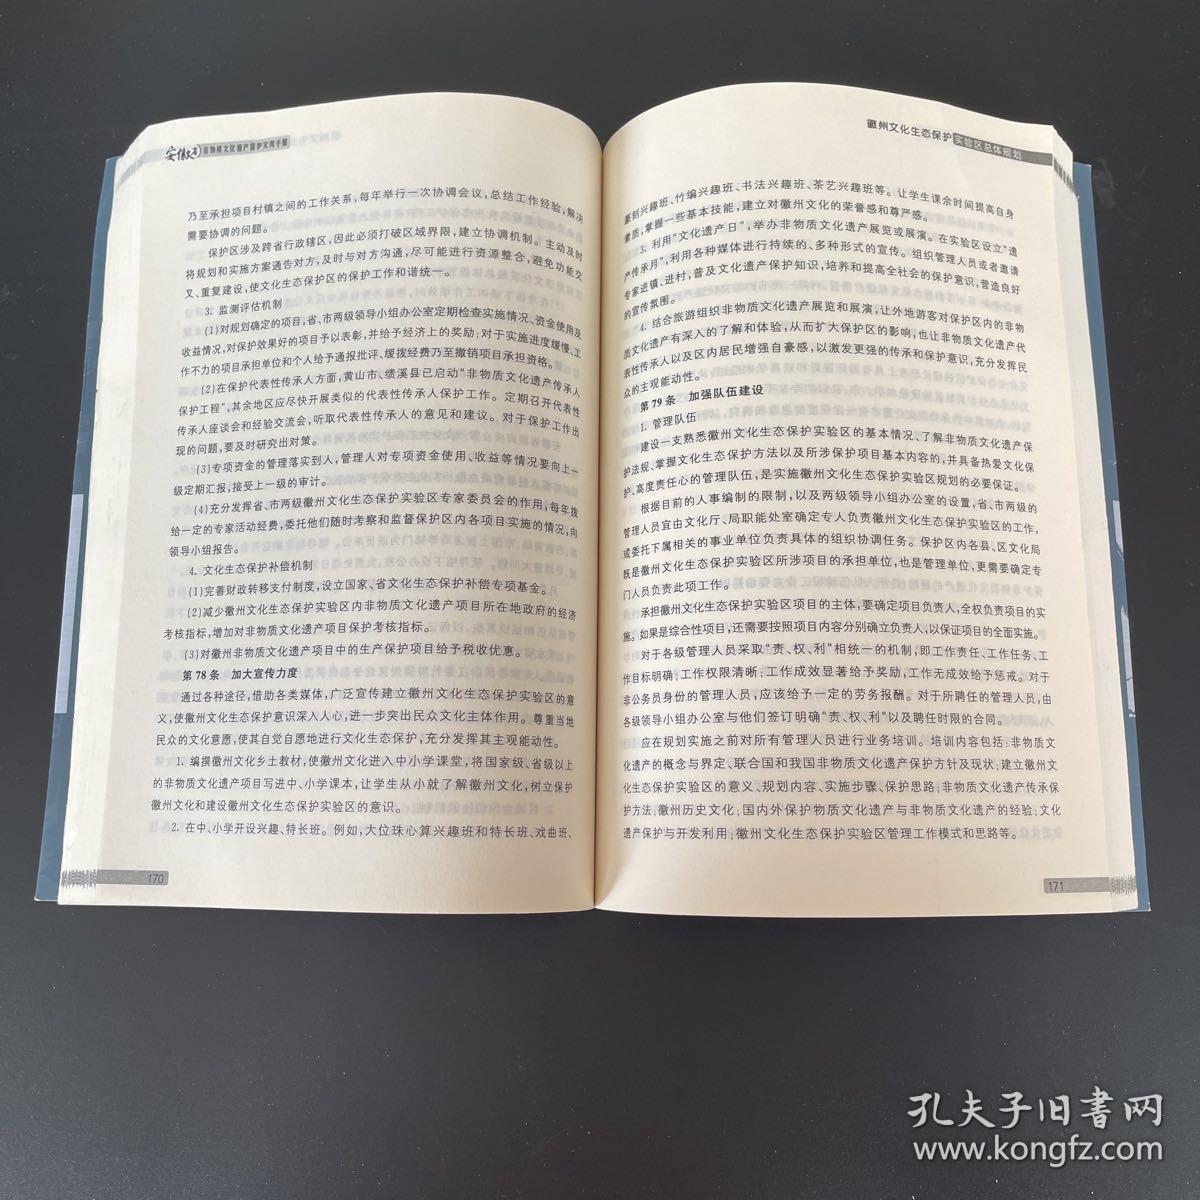 安徽省非物质文化遗产保护实用手册